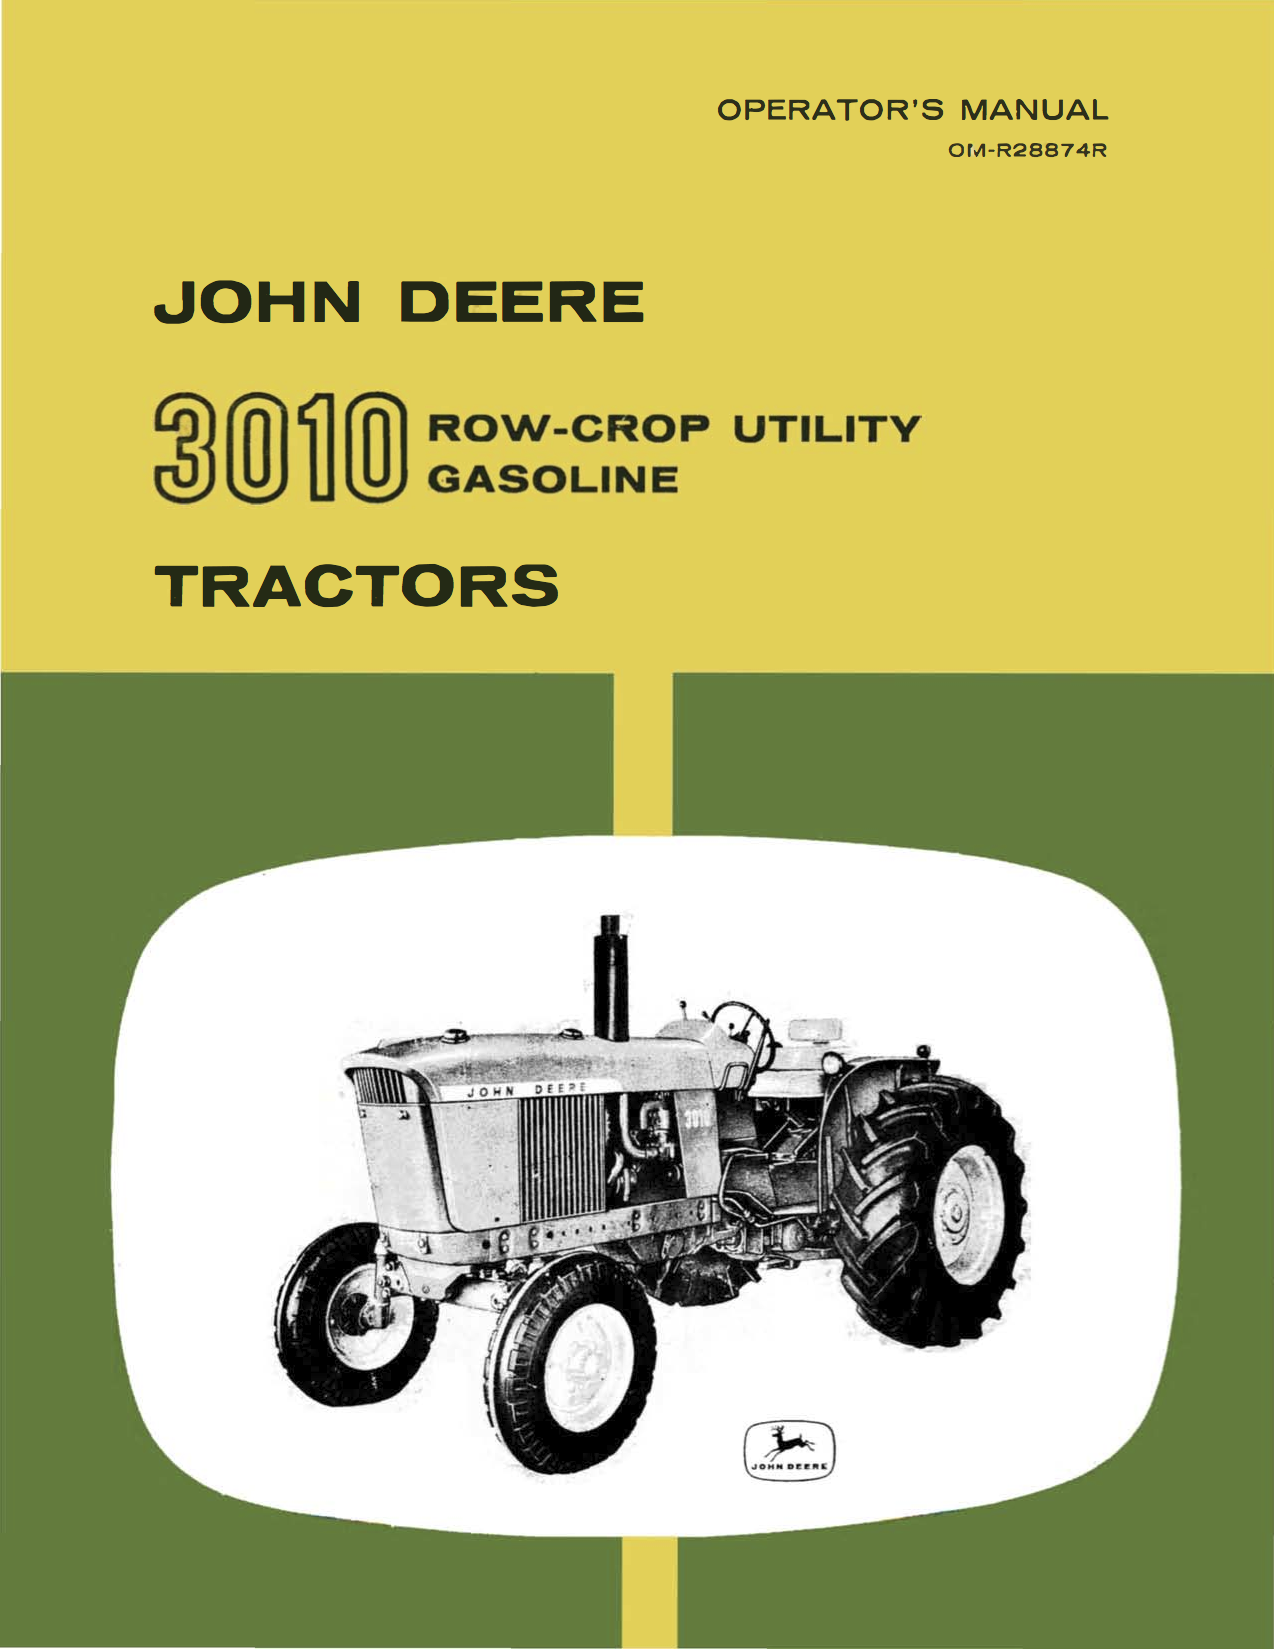 John Deere 3010 Row-Crop Utility Gasoline Tractors - Operator's Manual - Ag Manuals - A Provider of Digital Farm Manuals - 1